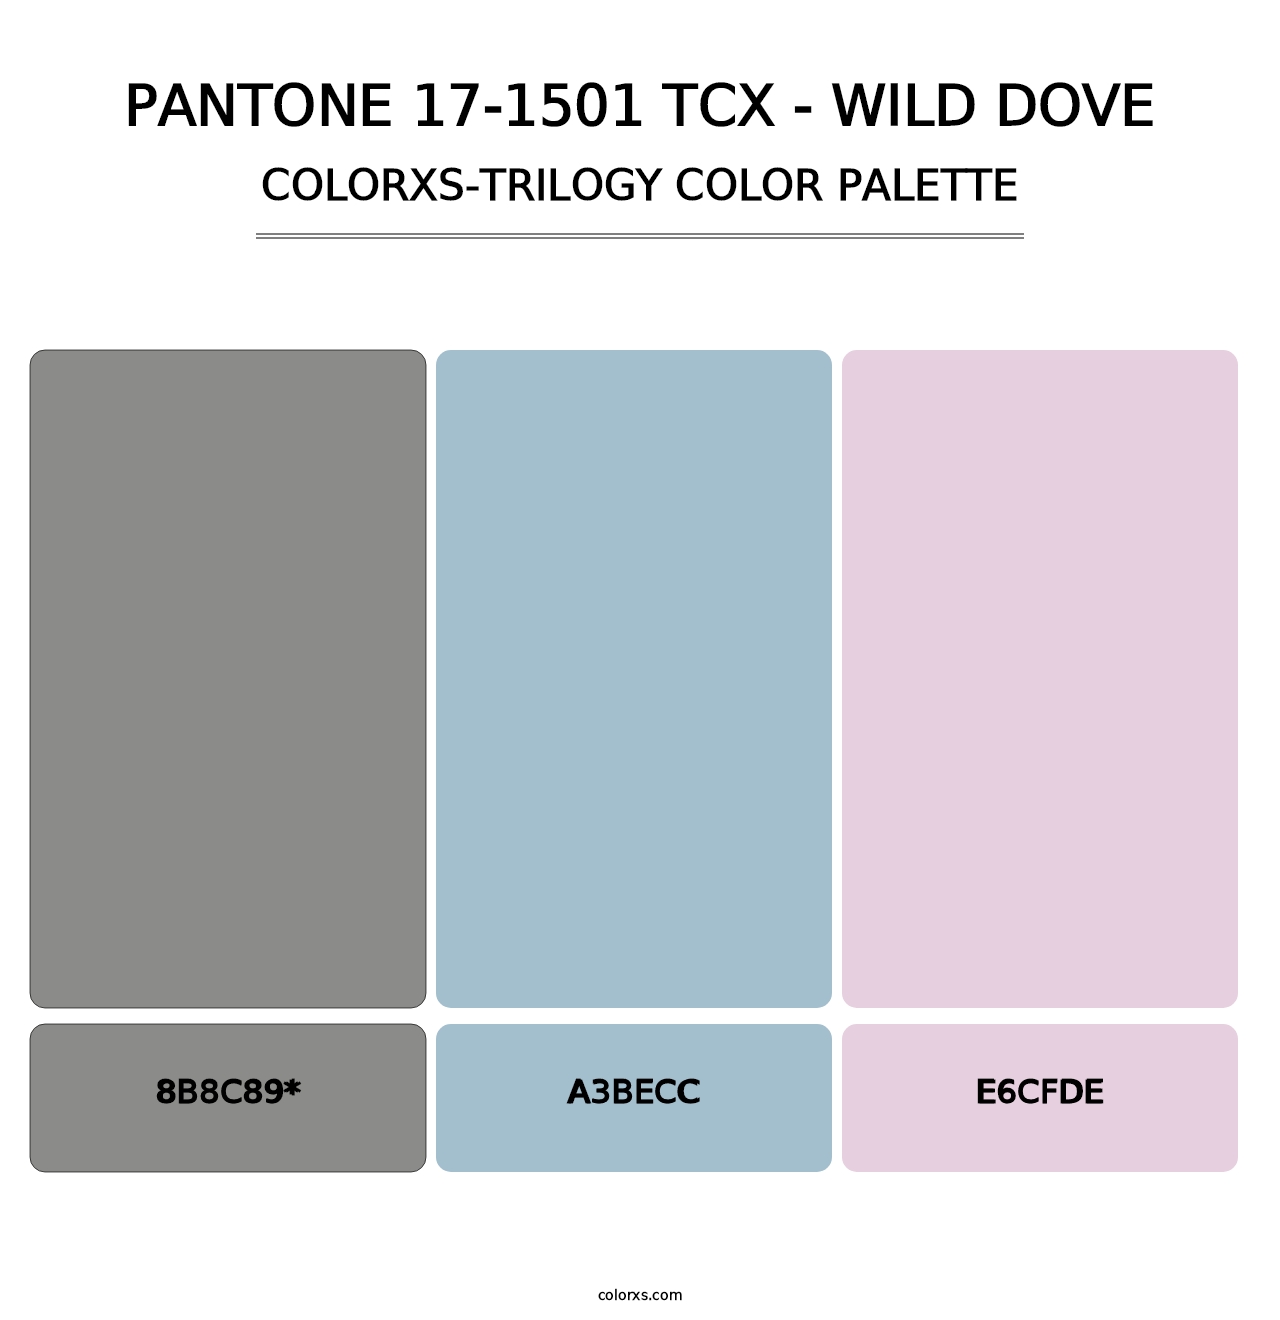 PANTONE 17-1501 TCX - Wild Dove - Colorxs Trilogy Palette